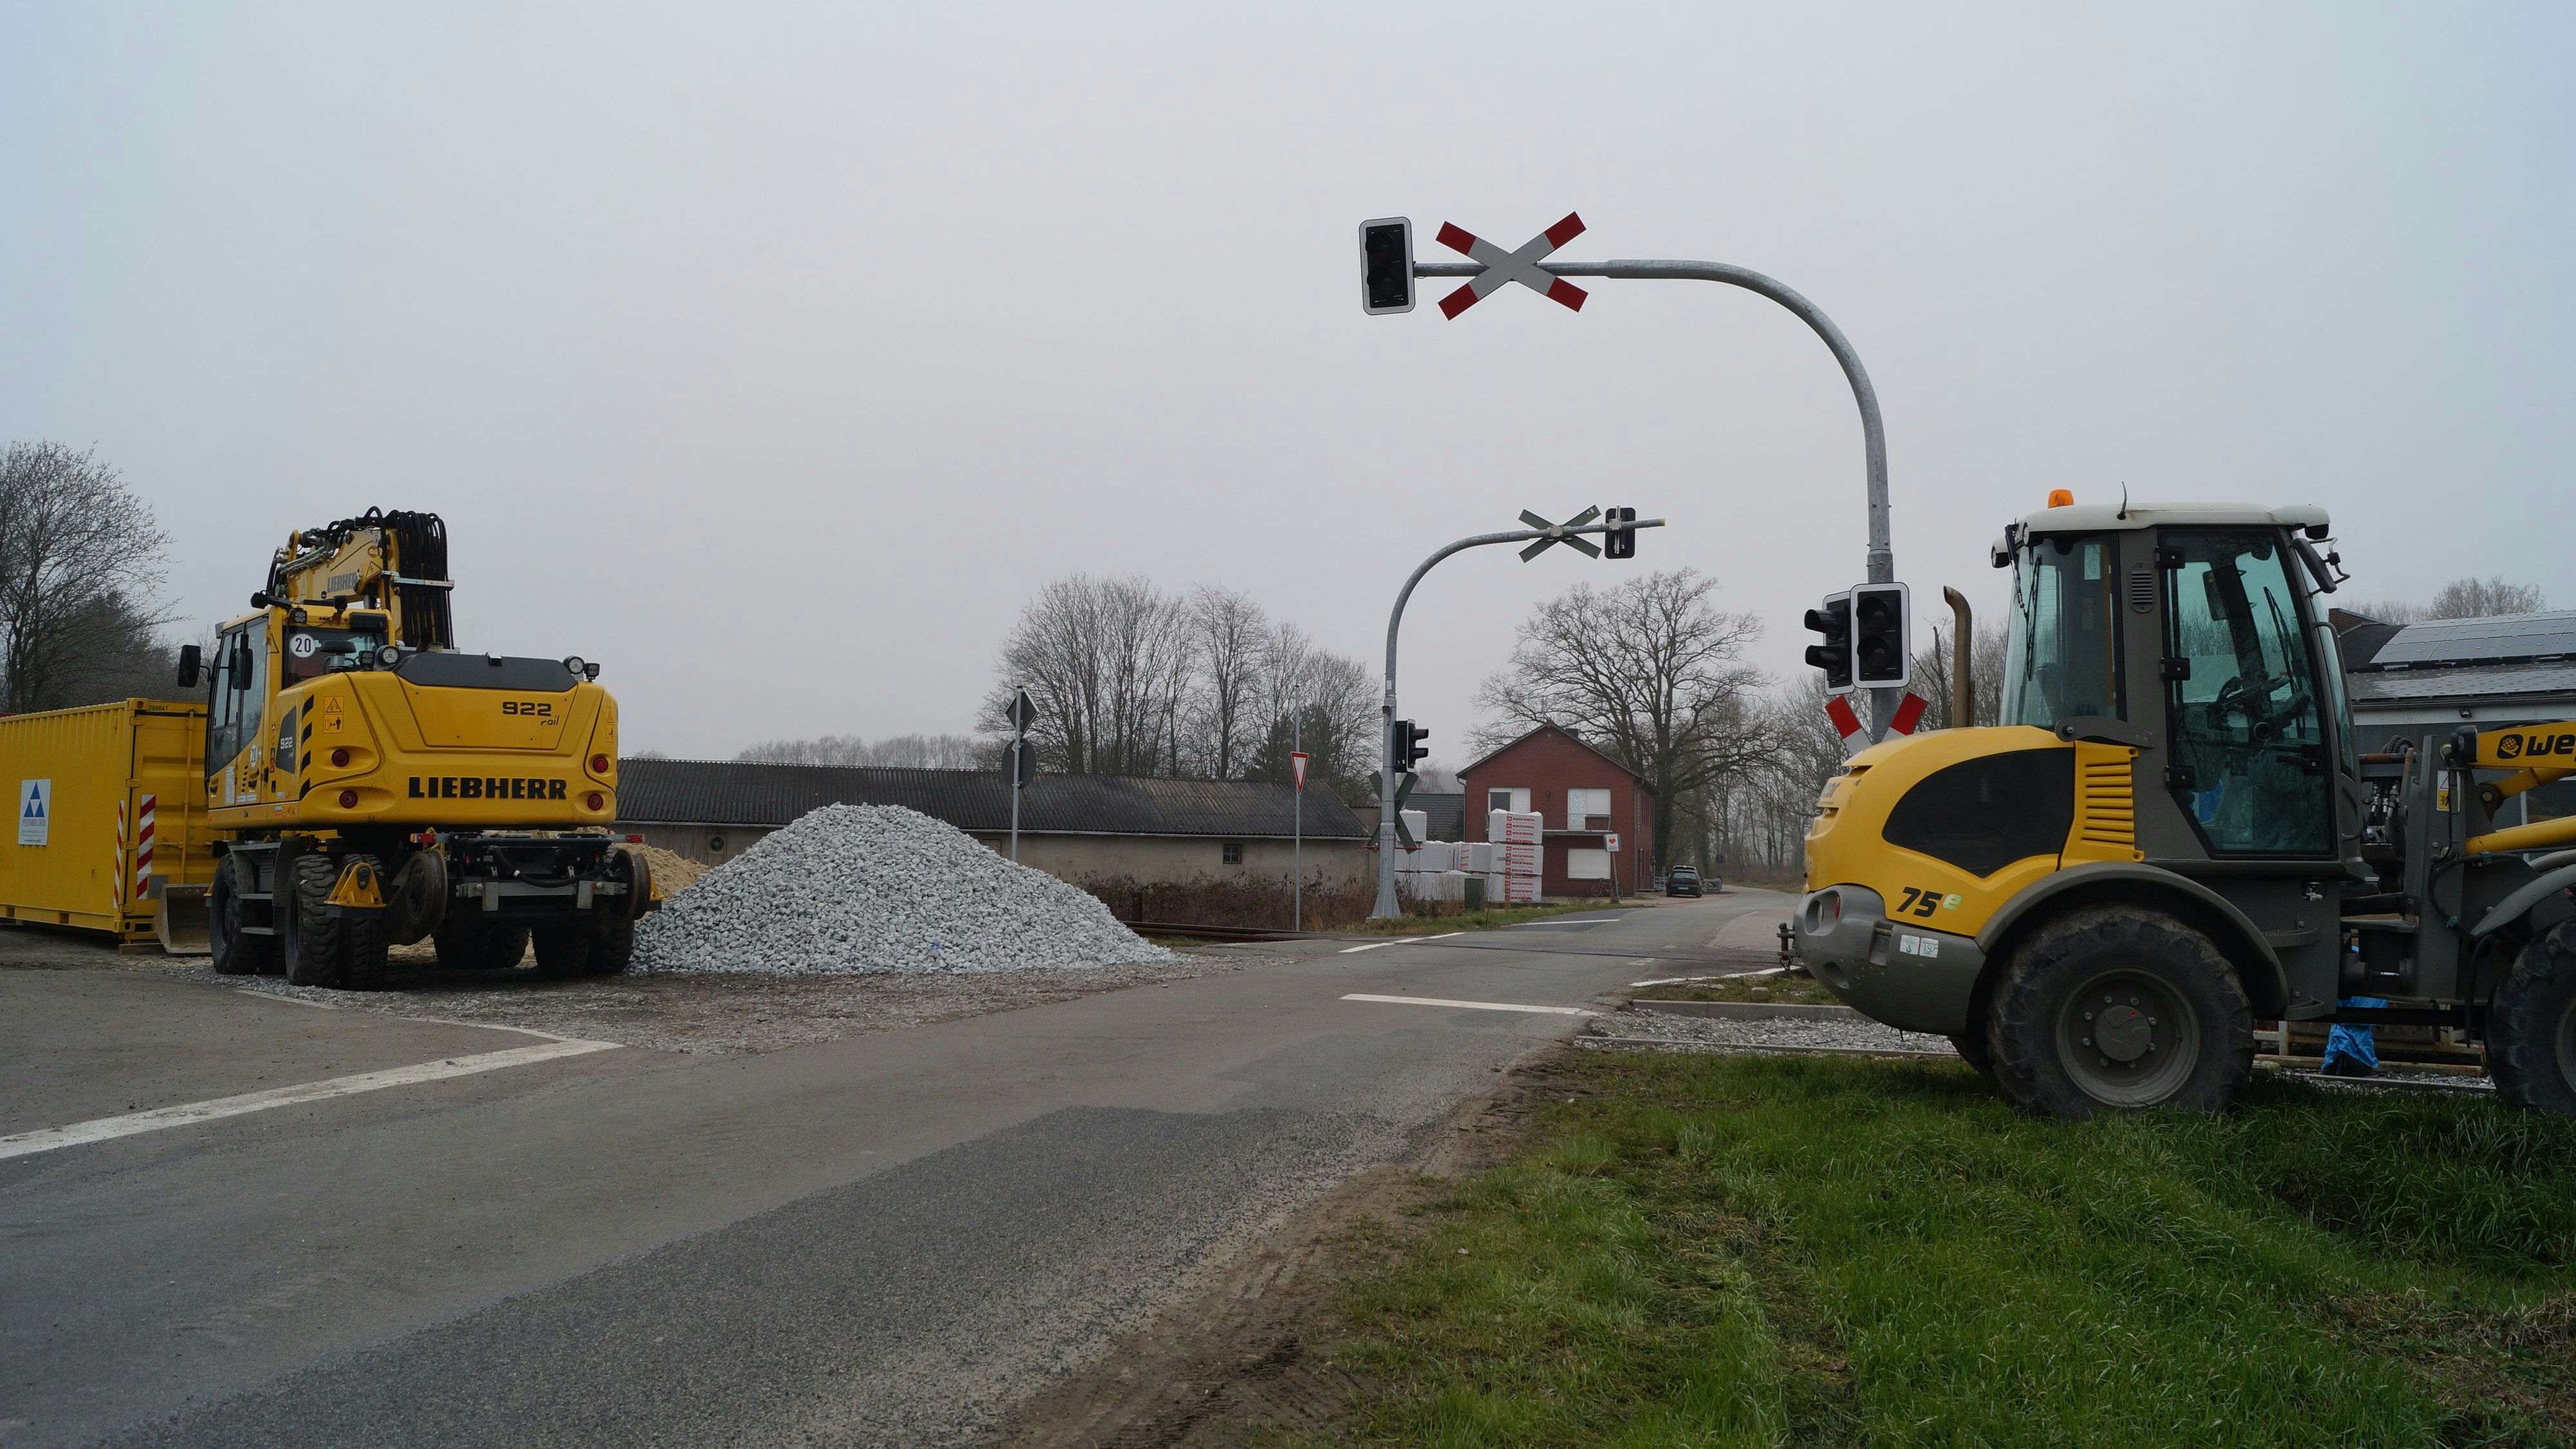 Vorbereitungen laufen: Der Bahnübergang an der Timpner Straße in Lutten wird erneuert. Dafür wird dieser ab Montag für 2 Monate gesperrt. Foto: C. Meyer